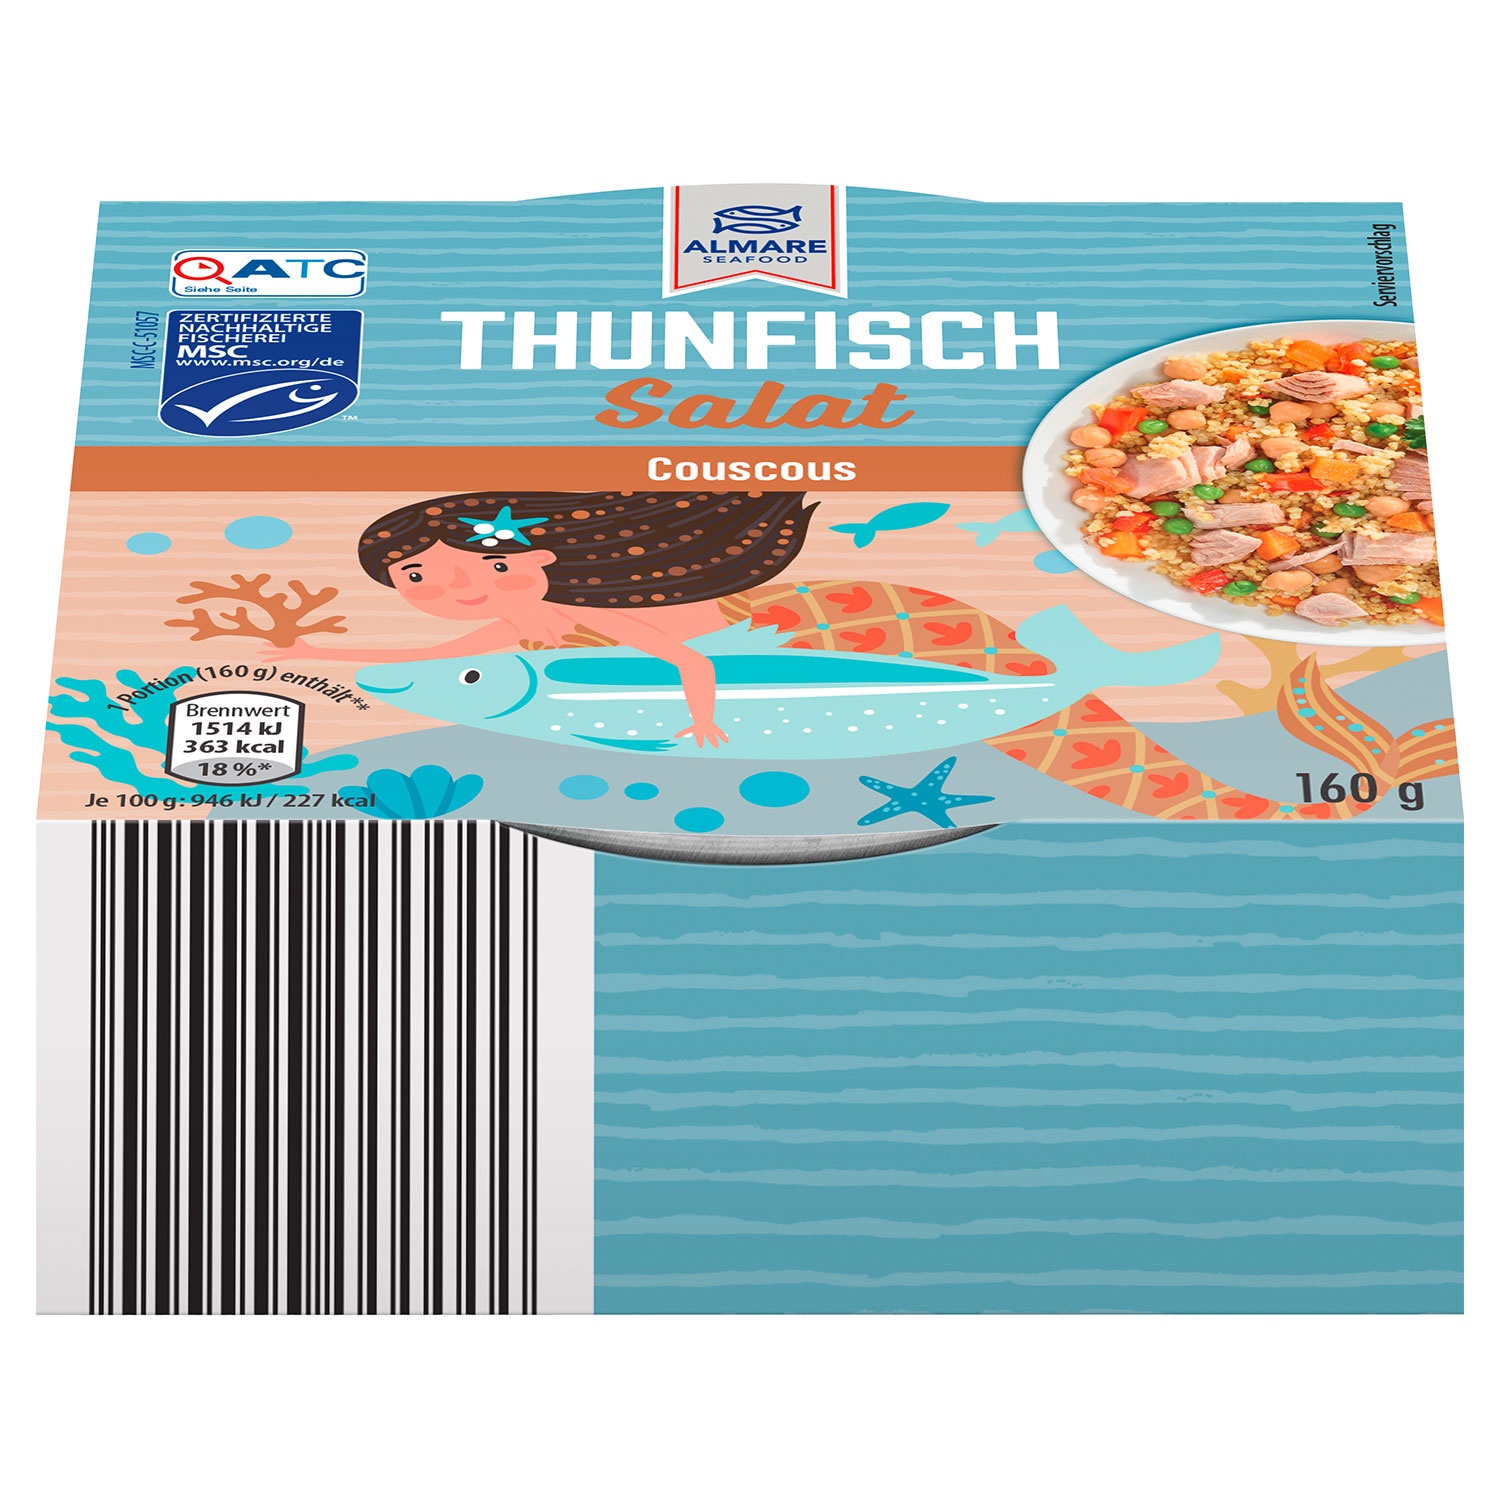 ALMARE Thunfischsalate 160 g, Couscous